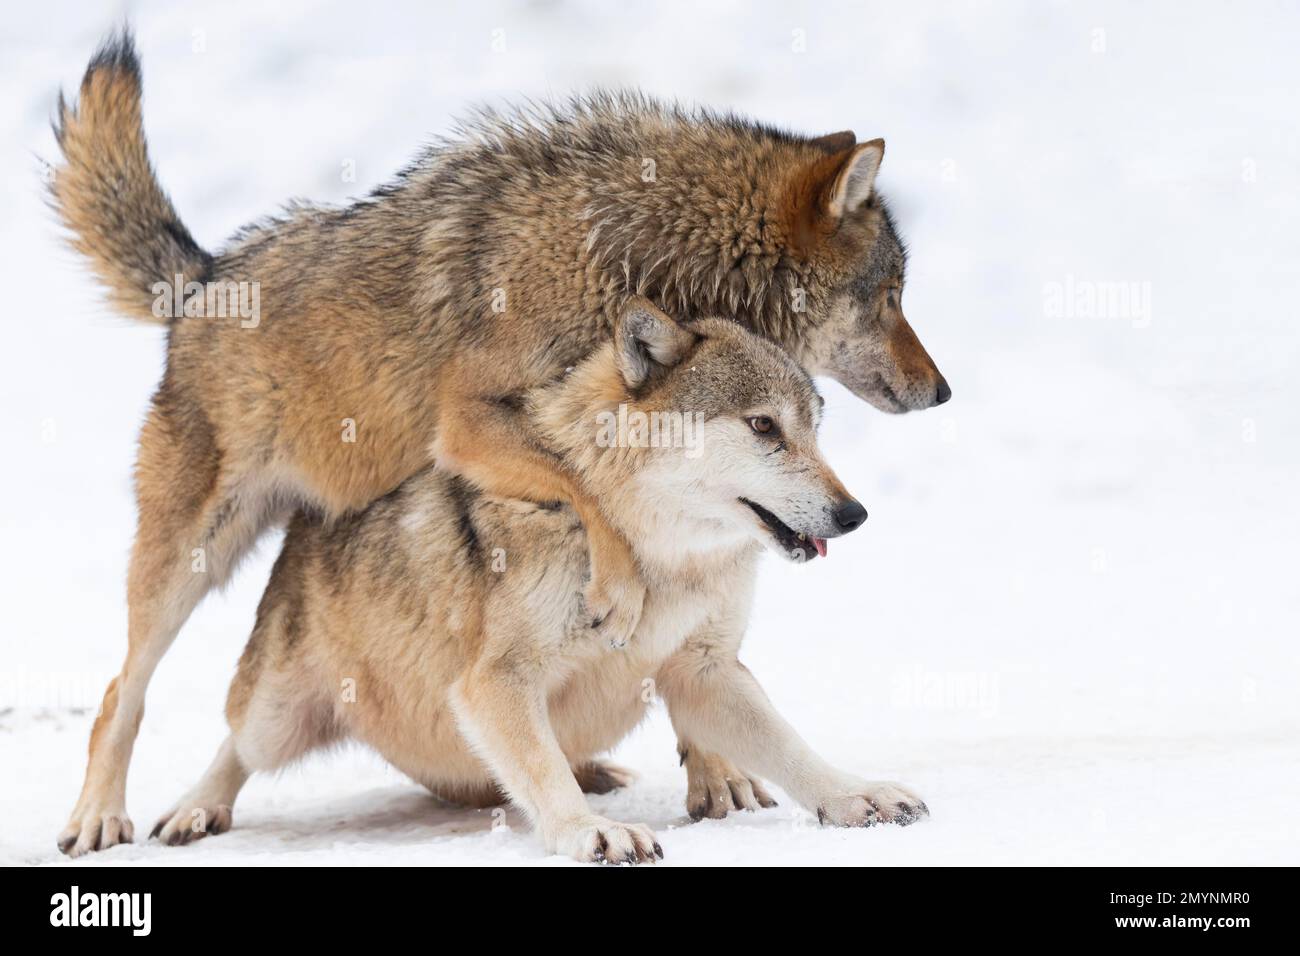 Loups algonquines (Canis lupus lycaon) dans la neige, comportement social, jouer, captif, Allemagne, Europe Banque D'Images